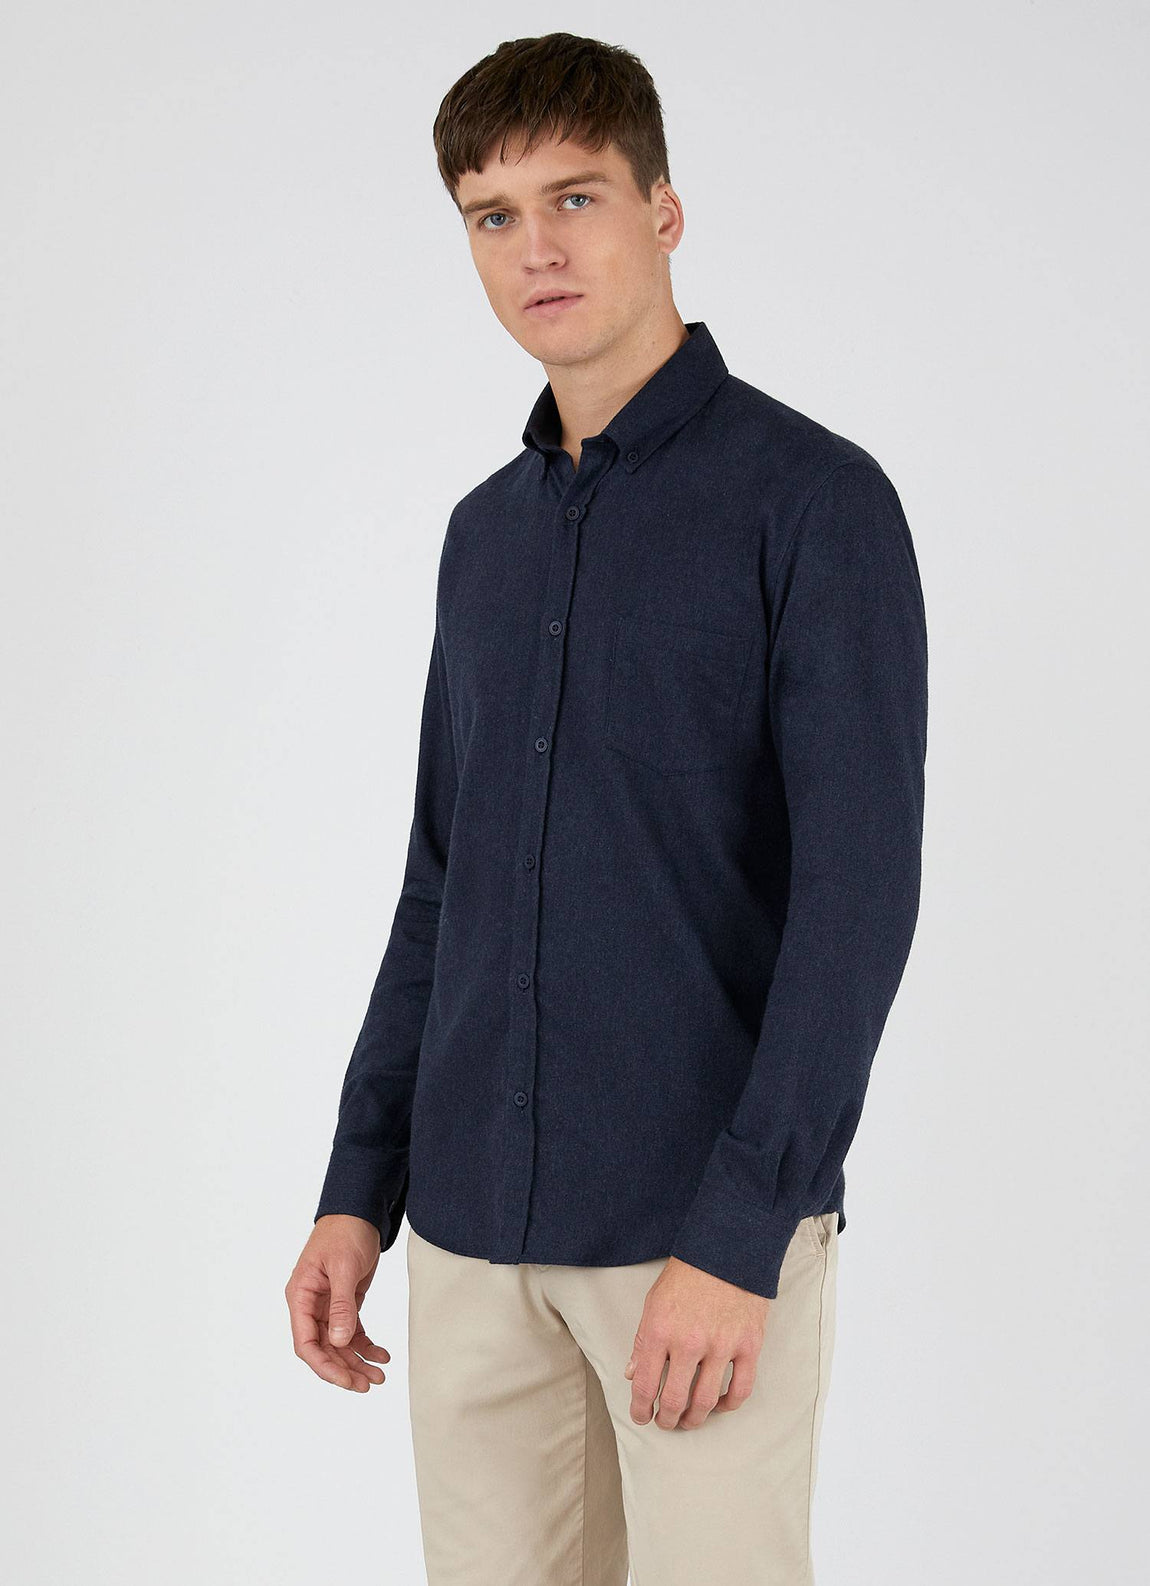 Men's Brushed Flannel Button-Down Shirt in Navy Melange | Sunspel